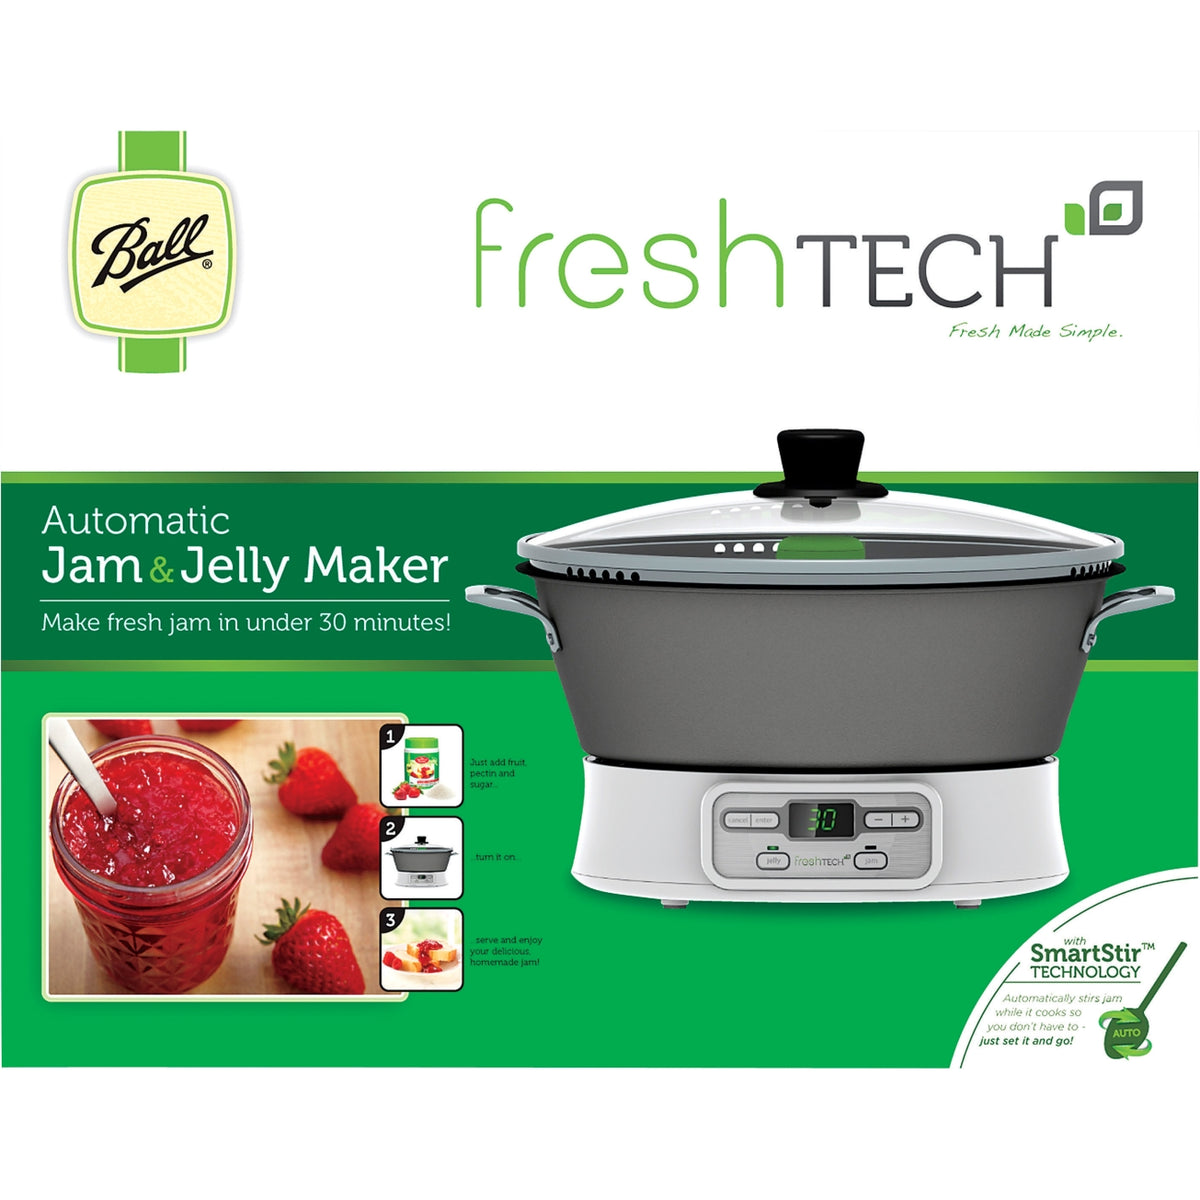 Ball FreshTech 1440035005 Automatic Jam And Jelly Maker